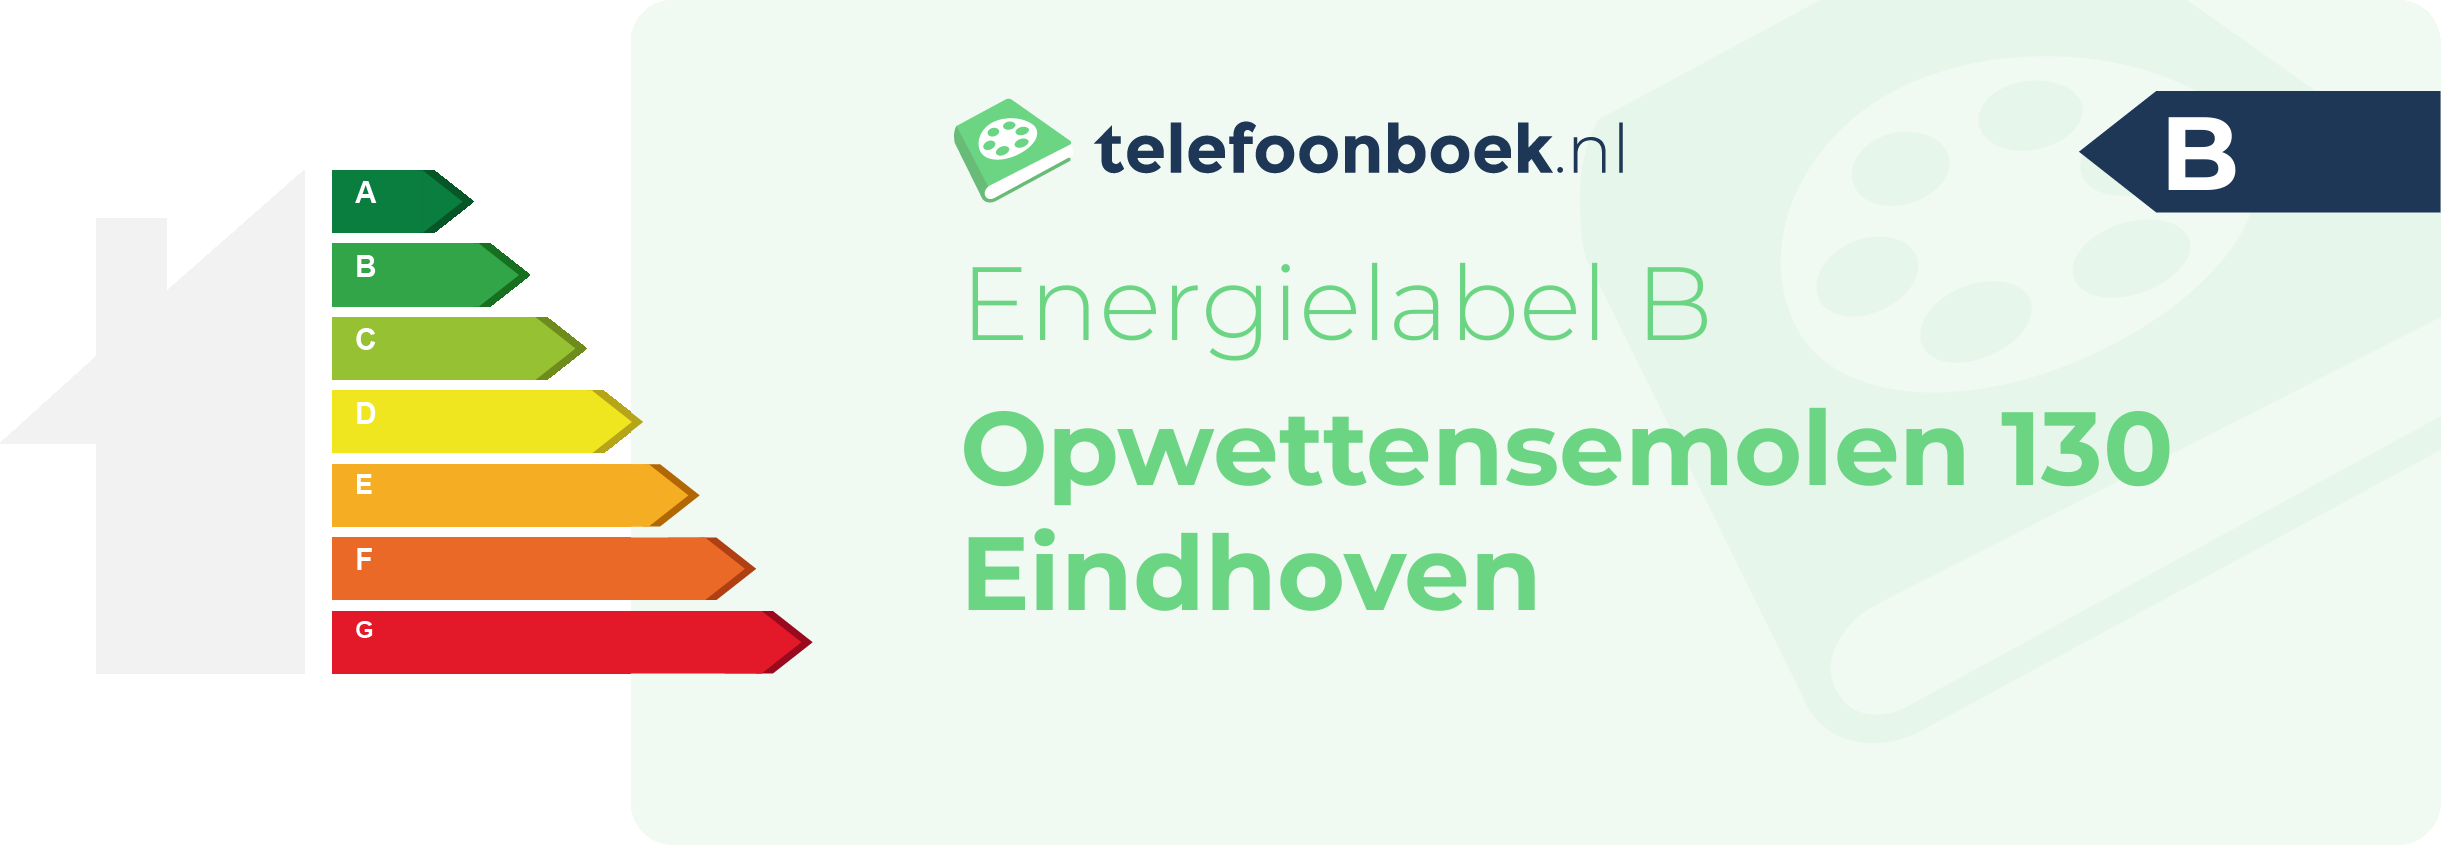 Energielabel Opwettensemolen 130 Eindhoven